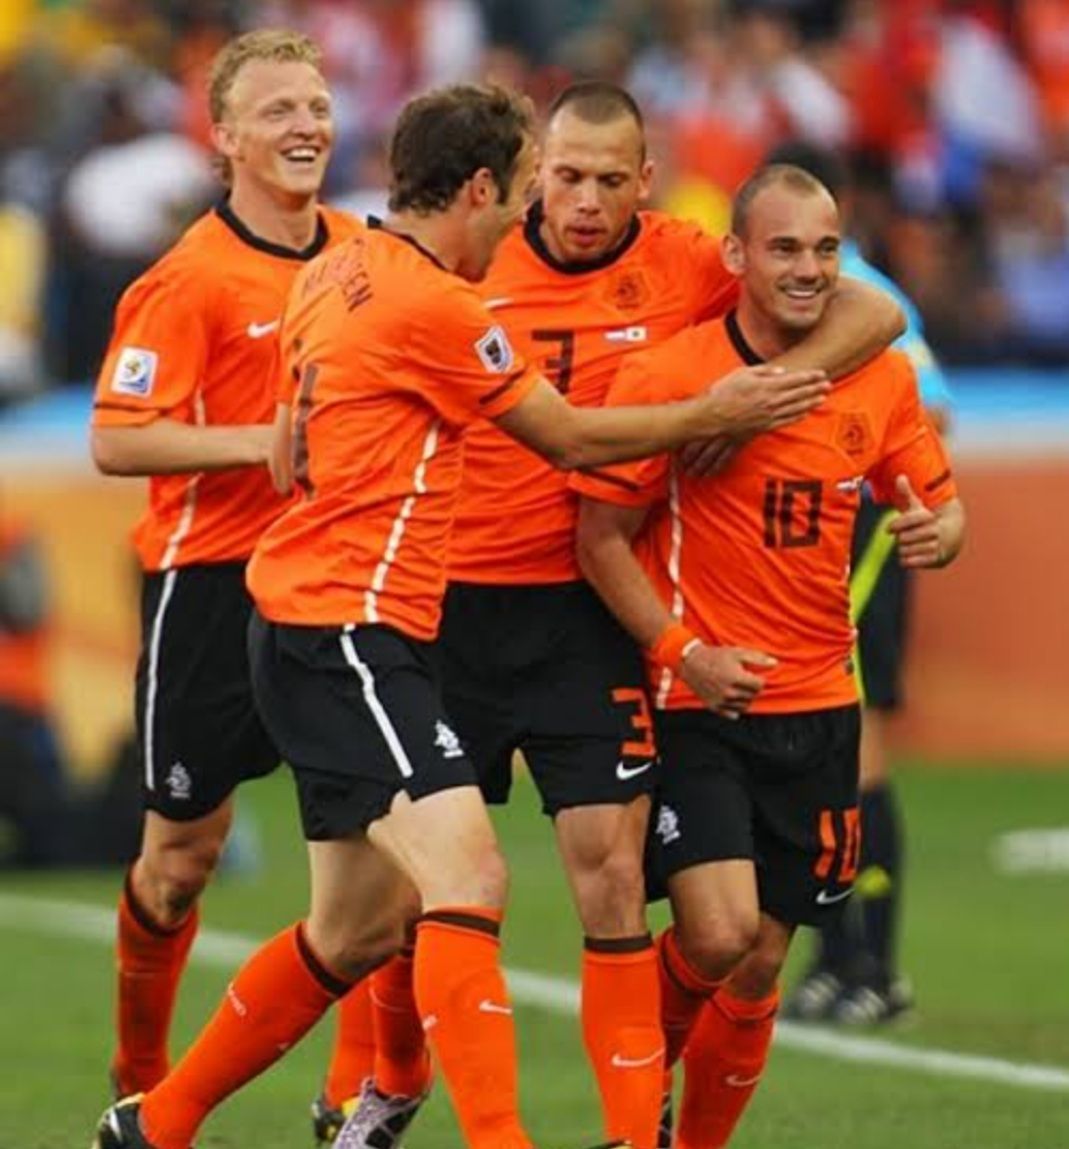 オランダ代表ユニフォーム 2010年南アフリカW杯 - ウェア